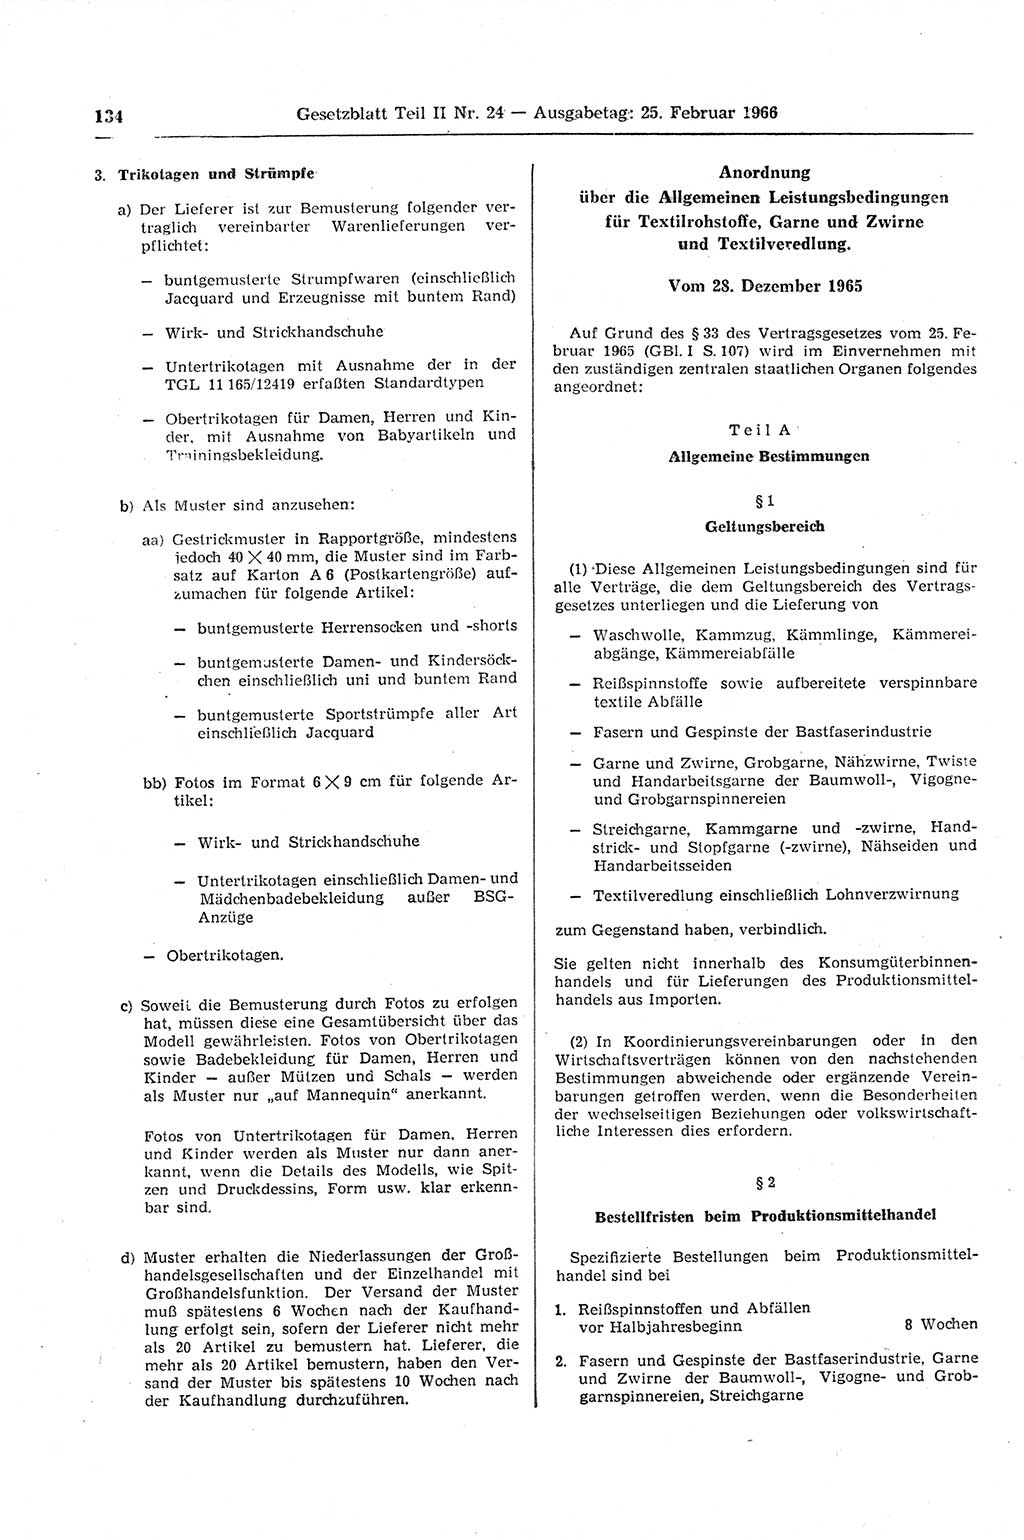 Gesetzblatt (GBl.) der Deutschen Demokratischen Republik (DDR) Teil ⅠⅠ 1966, Seite 134 (GBl. DDR ⅠⅠ 1966, S. 134)